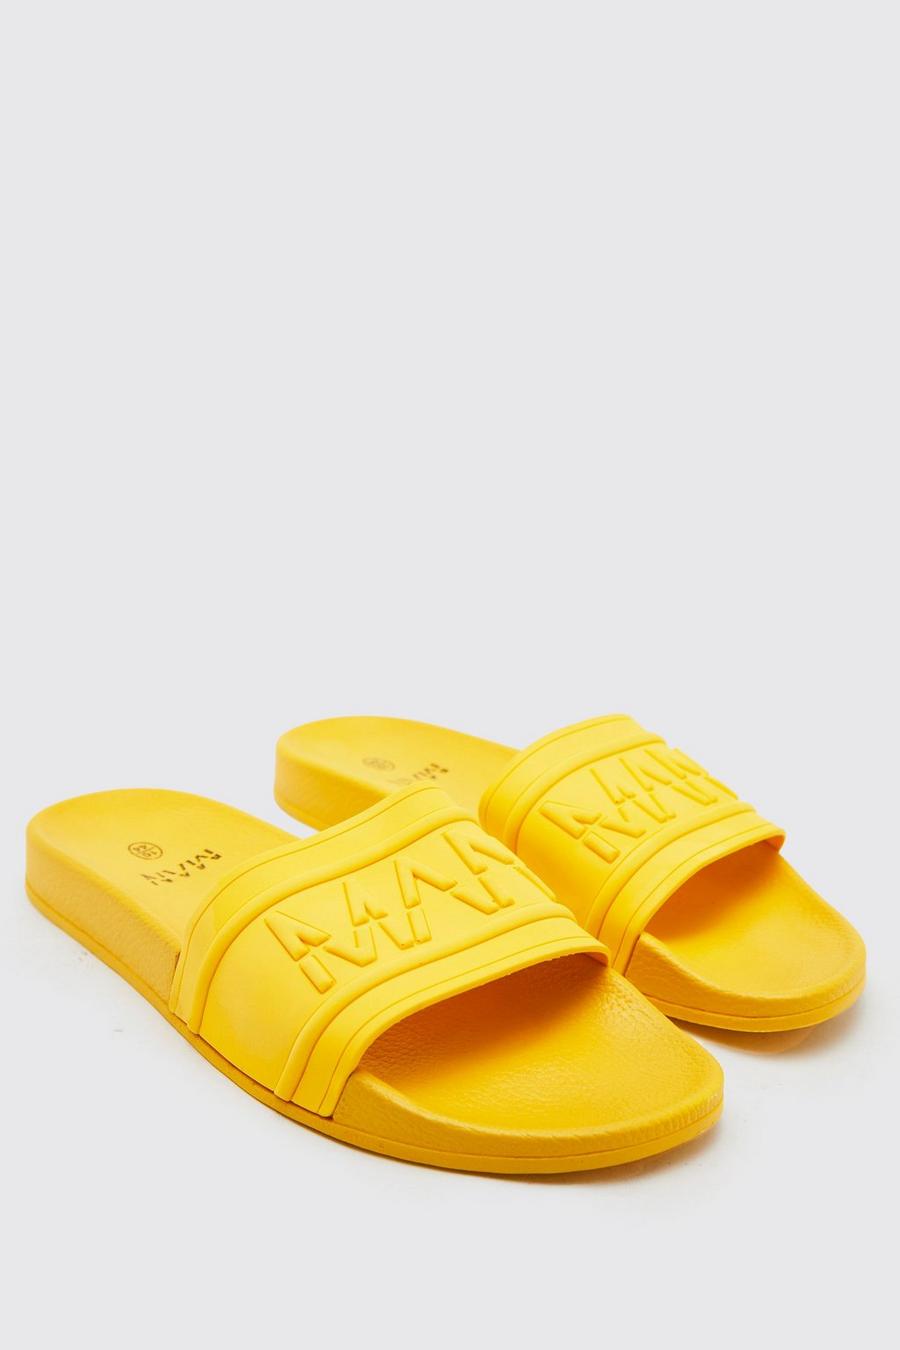 Yellow jaune Man Dash Slippers